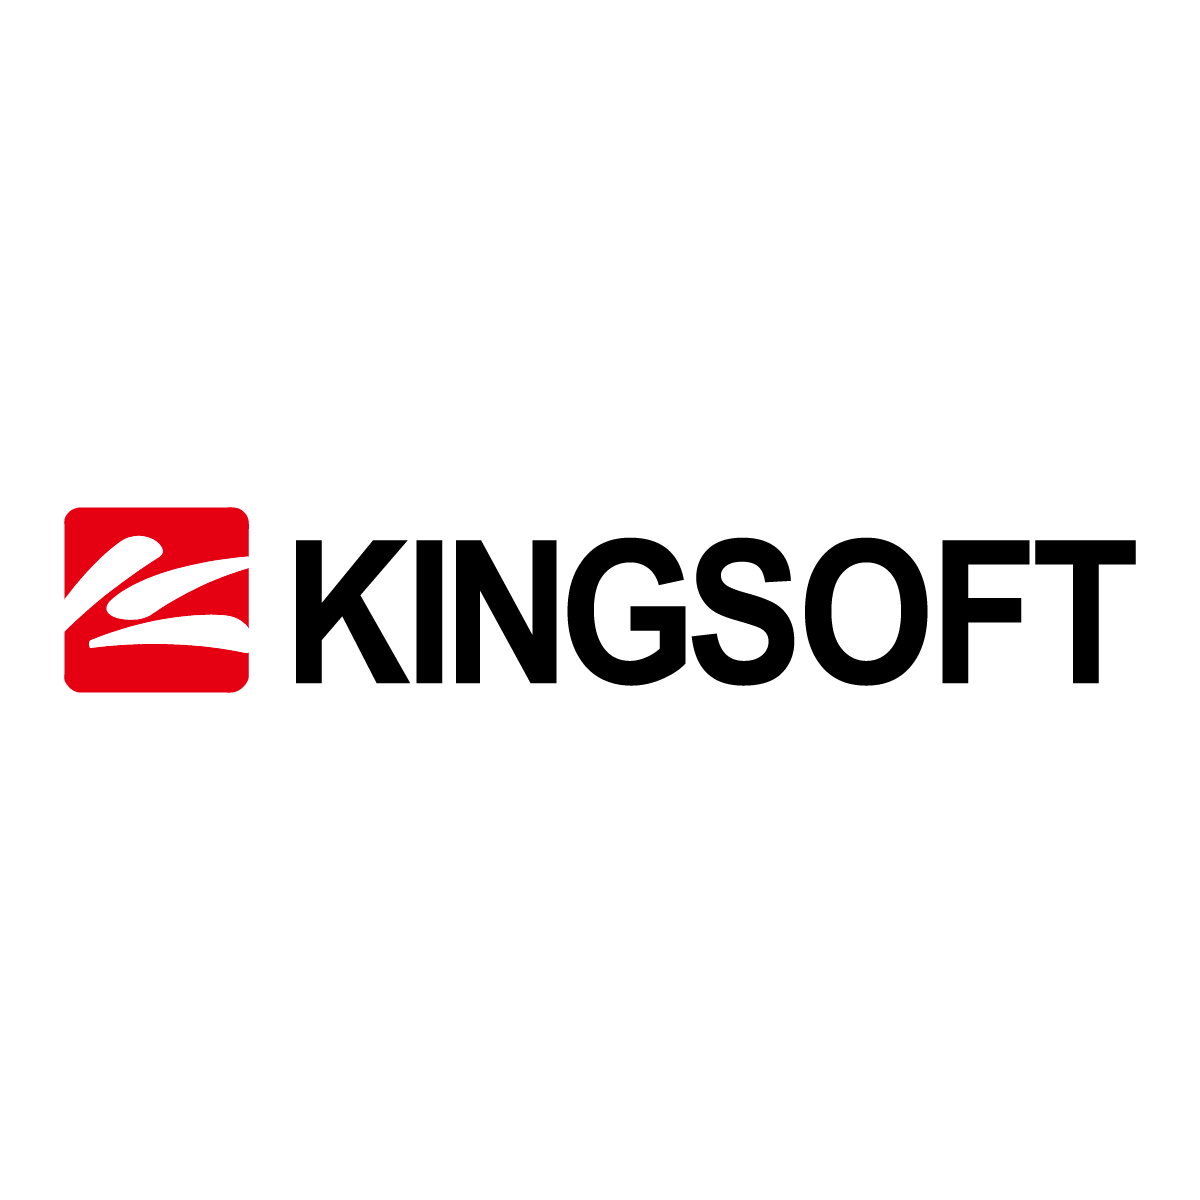 KINGSOFT Internet Security 2017を一時的に無効にする方法 - KINGSOFT サポート